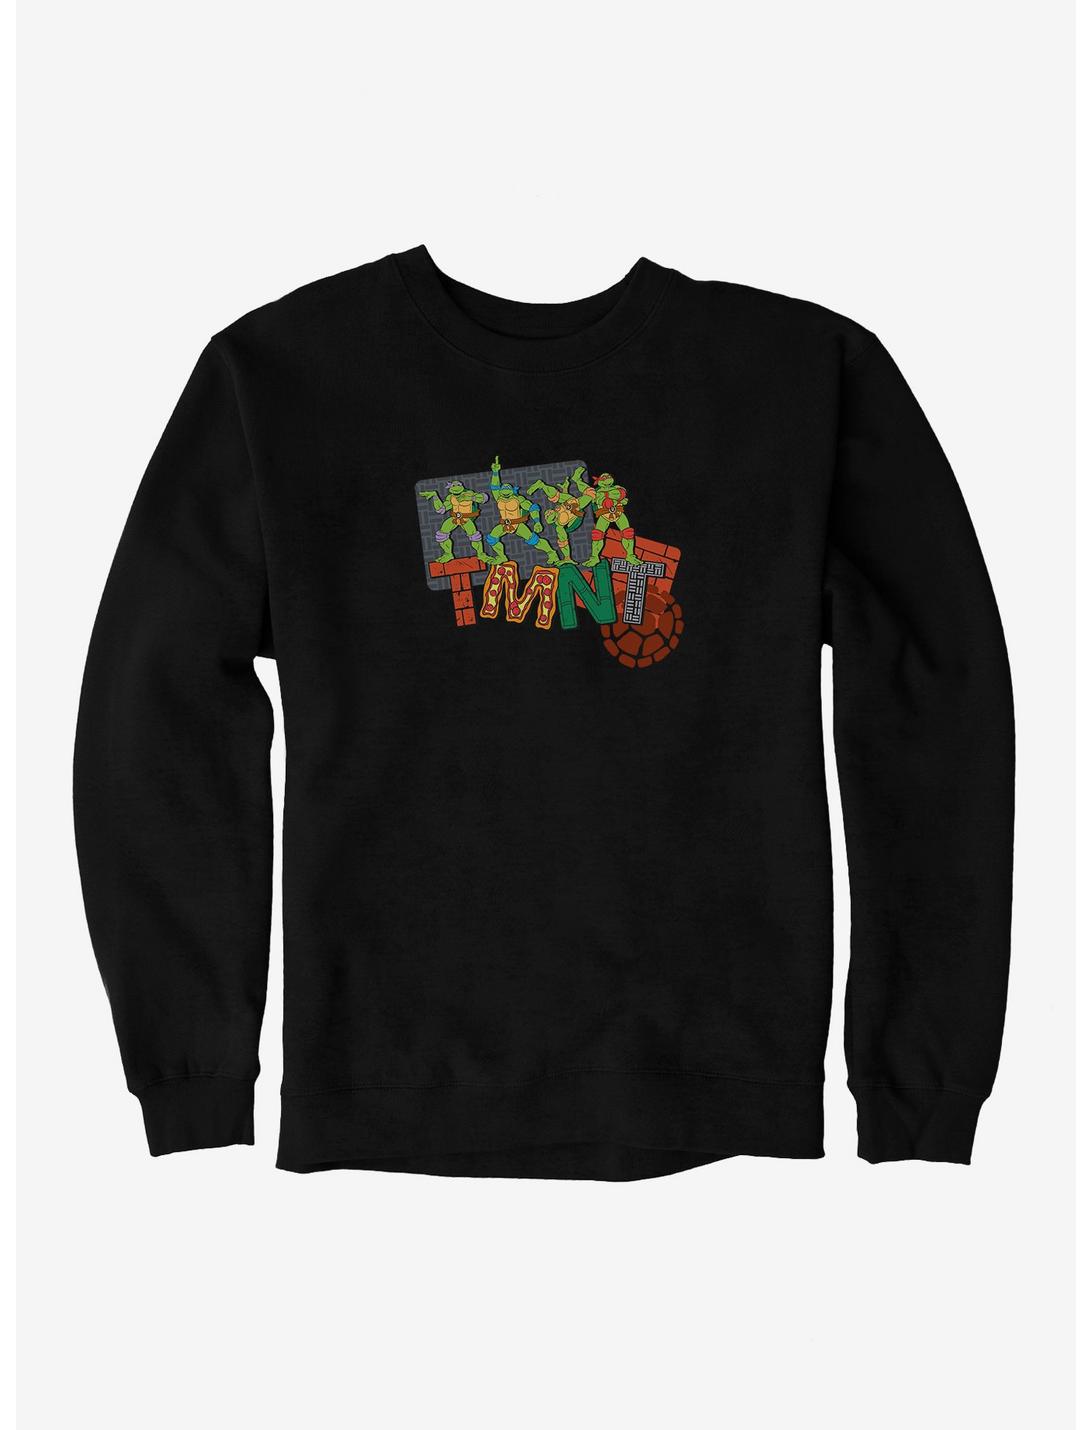 Teenage Mutant Ninja Turtles Patterned Logo Letters Sweatshirt, BLACK, hi-res